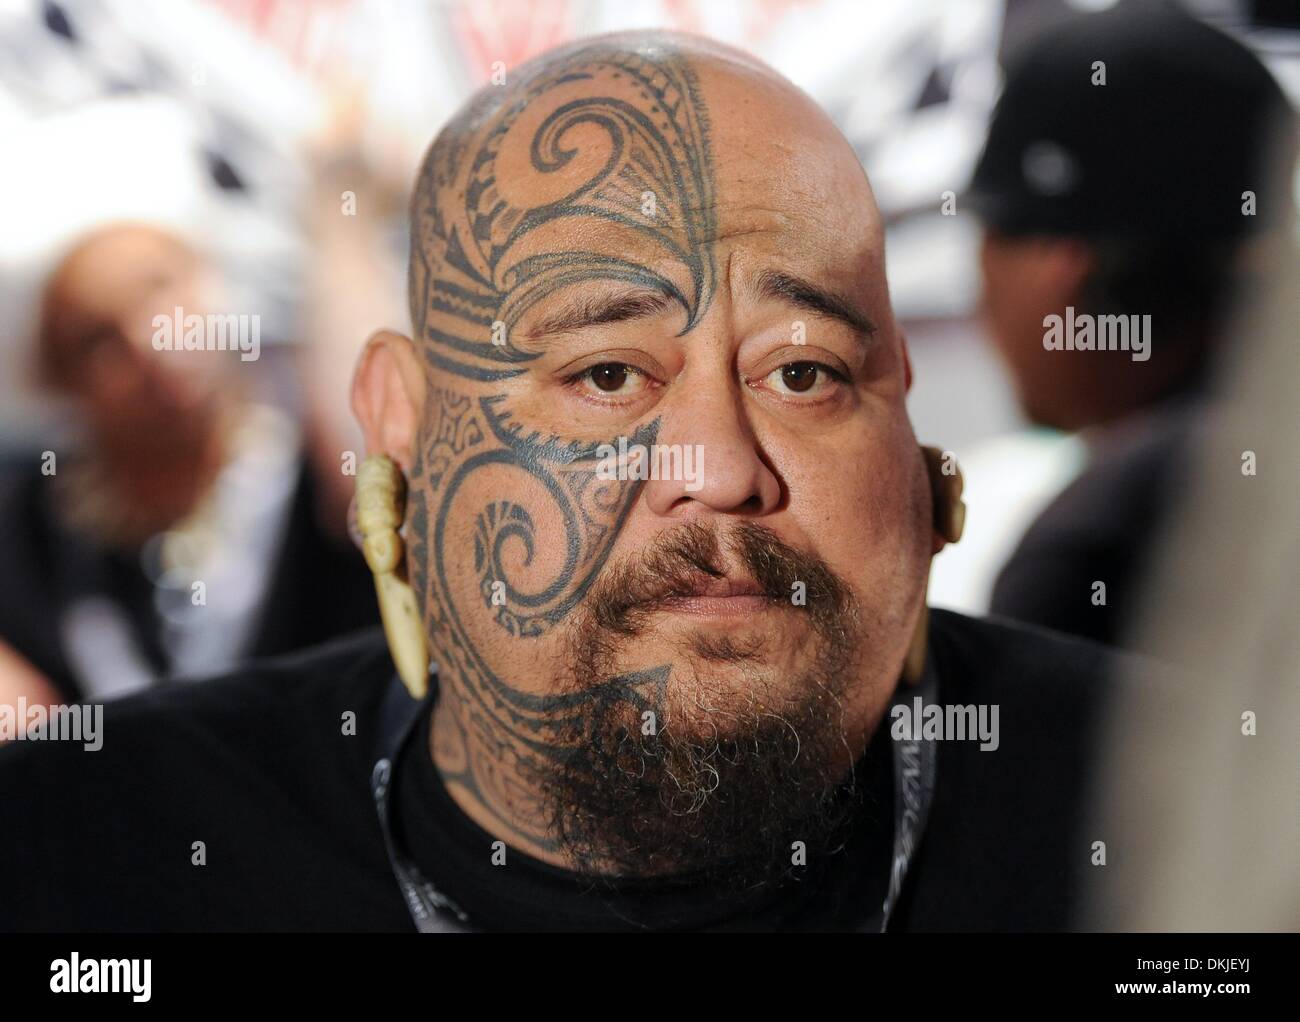 Vatea Tatau Tahiti de 'Mana', montre son tatouage tatouage national pendant la 3e Festival à Berlin, Allemagne, 06 décembre 2013. Le festival se poursuit jusqu'à ce 08 décembre 2013. Photo : BRITTA PEDERSEN Banque D'Images